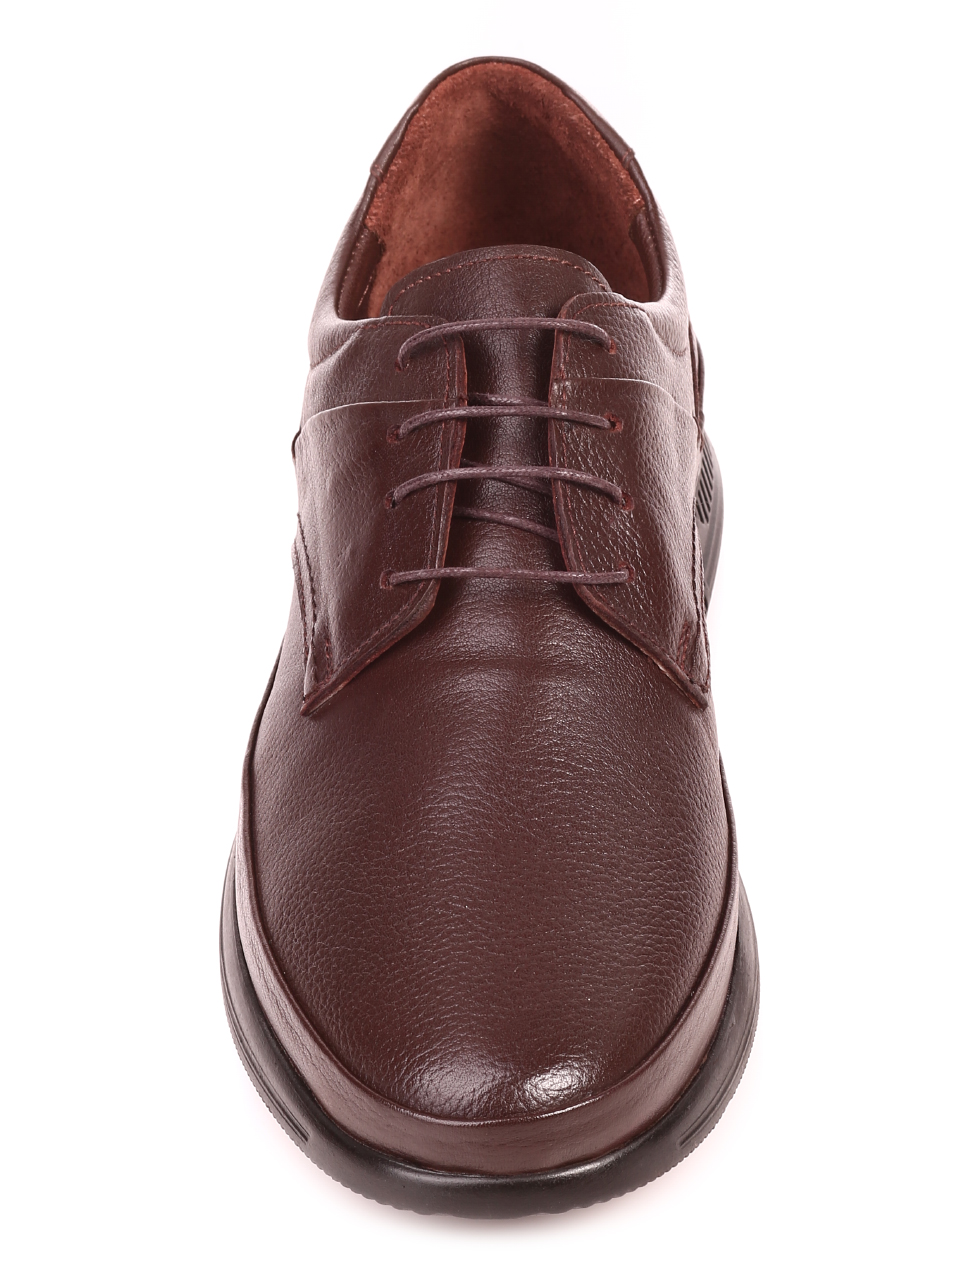 Ежедневни мъжки обувки от естествена кожа 7AT-21880 brown